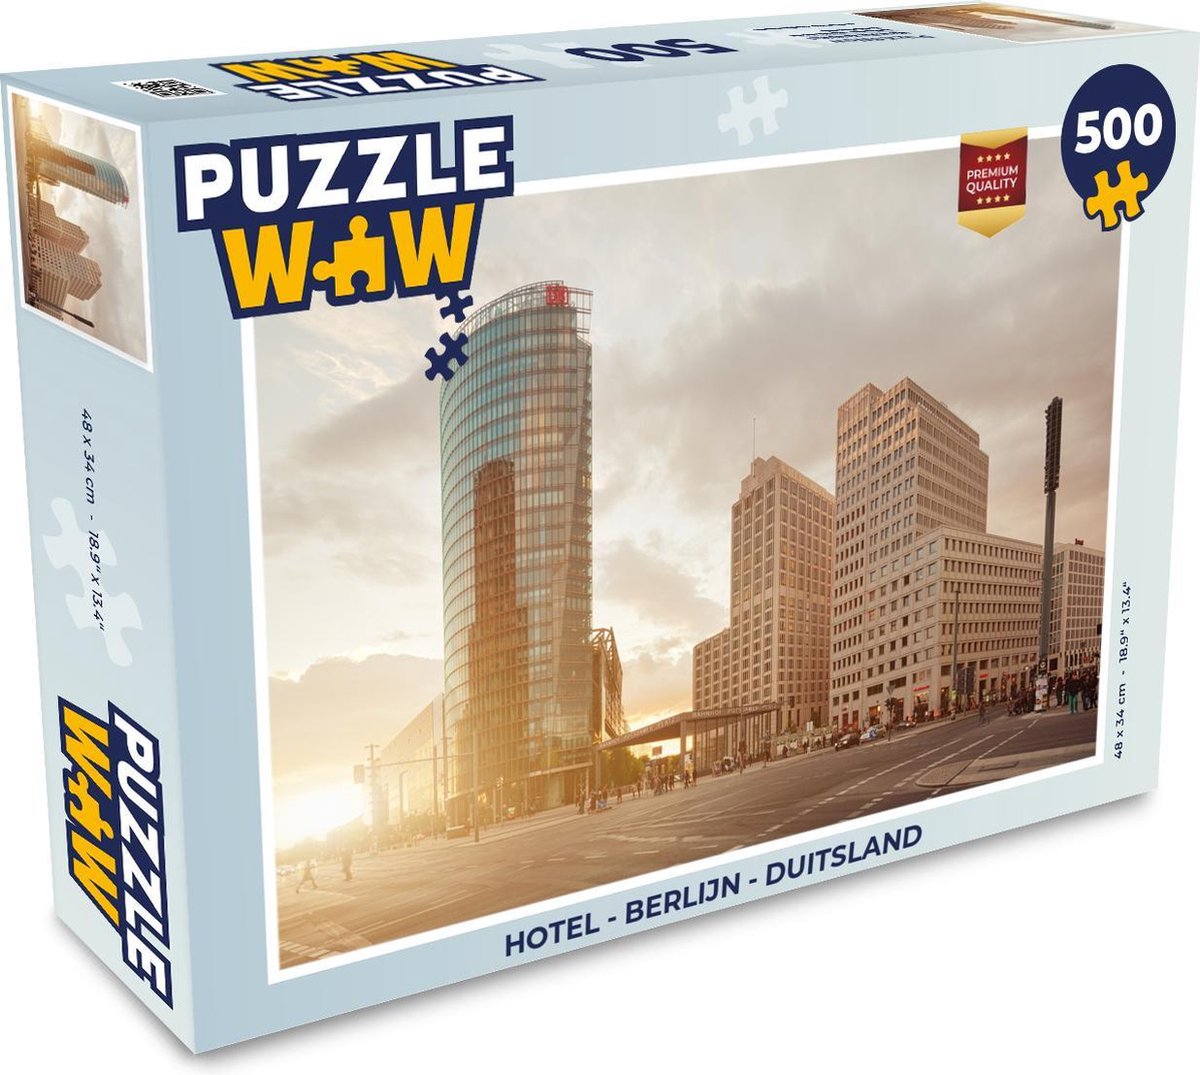 Afbeelding van product PuzzleWow  Puzzel Hotel - Berlijn - Duitsland - Legpuzzel - Puzzel 500 stukjes